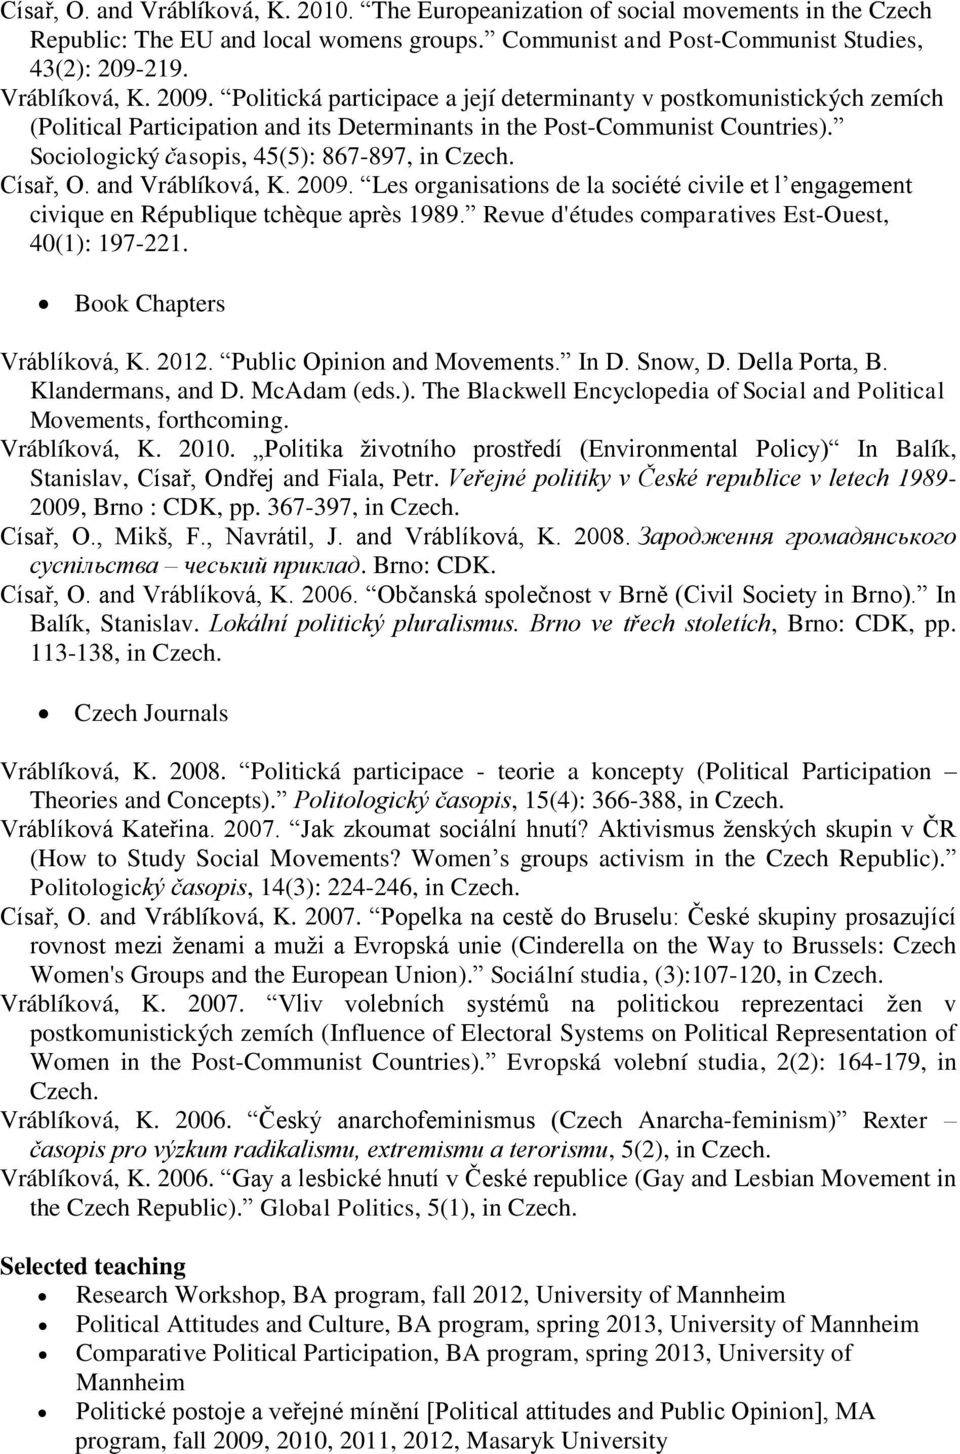 Císař, O. and Vráblíková, K. 2009. Les organisations de la société civile et l engagement civique en République tchèque après 1989. Revue d'études comparatives Est-Ouest, 40(1): 197-221.